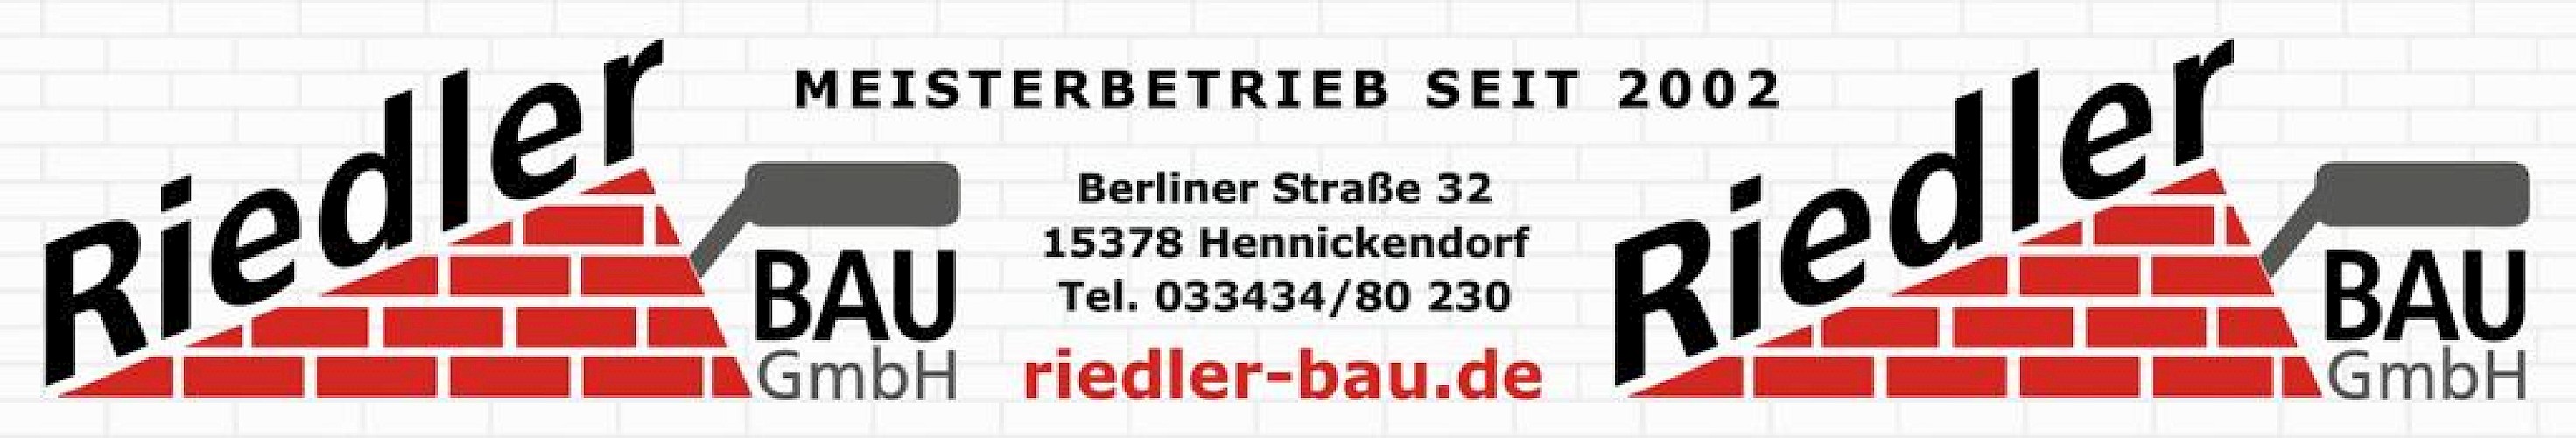 Riedler Bau GmbH